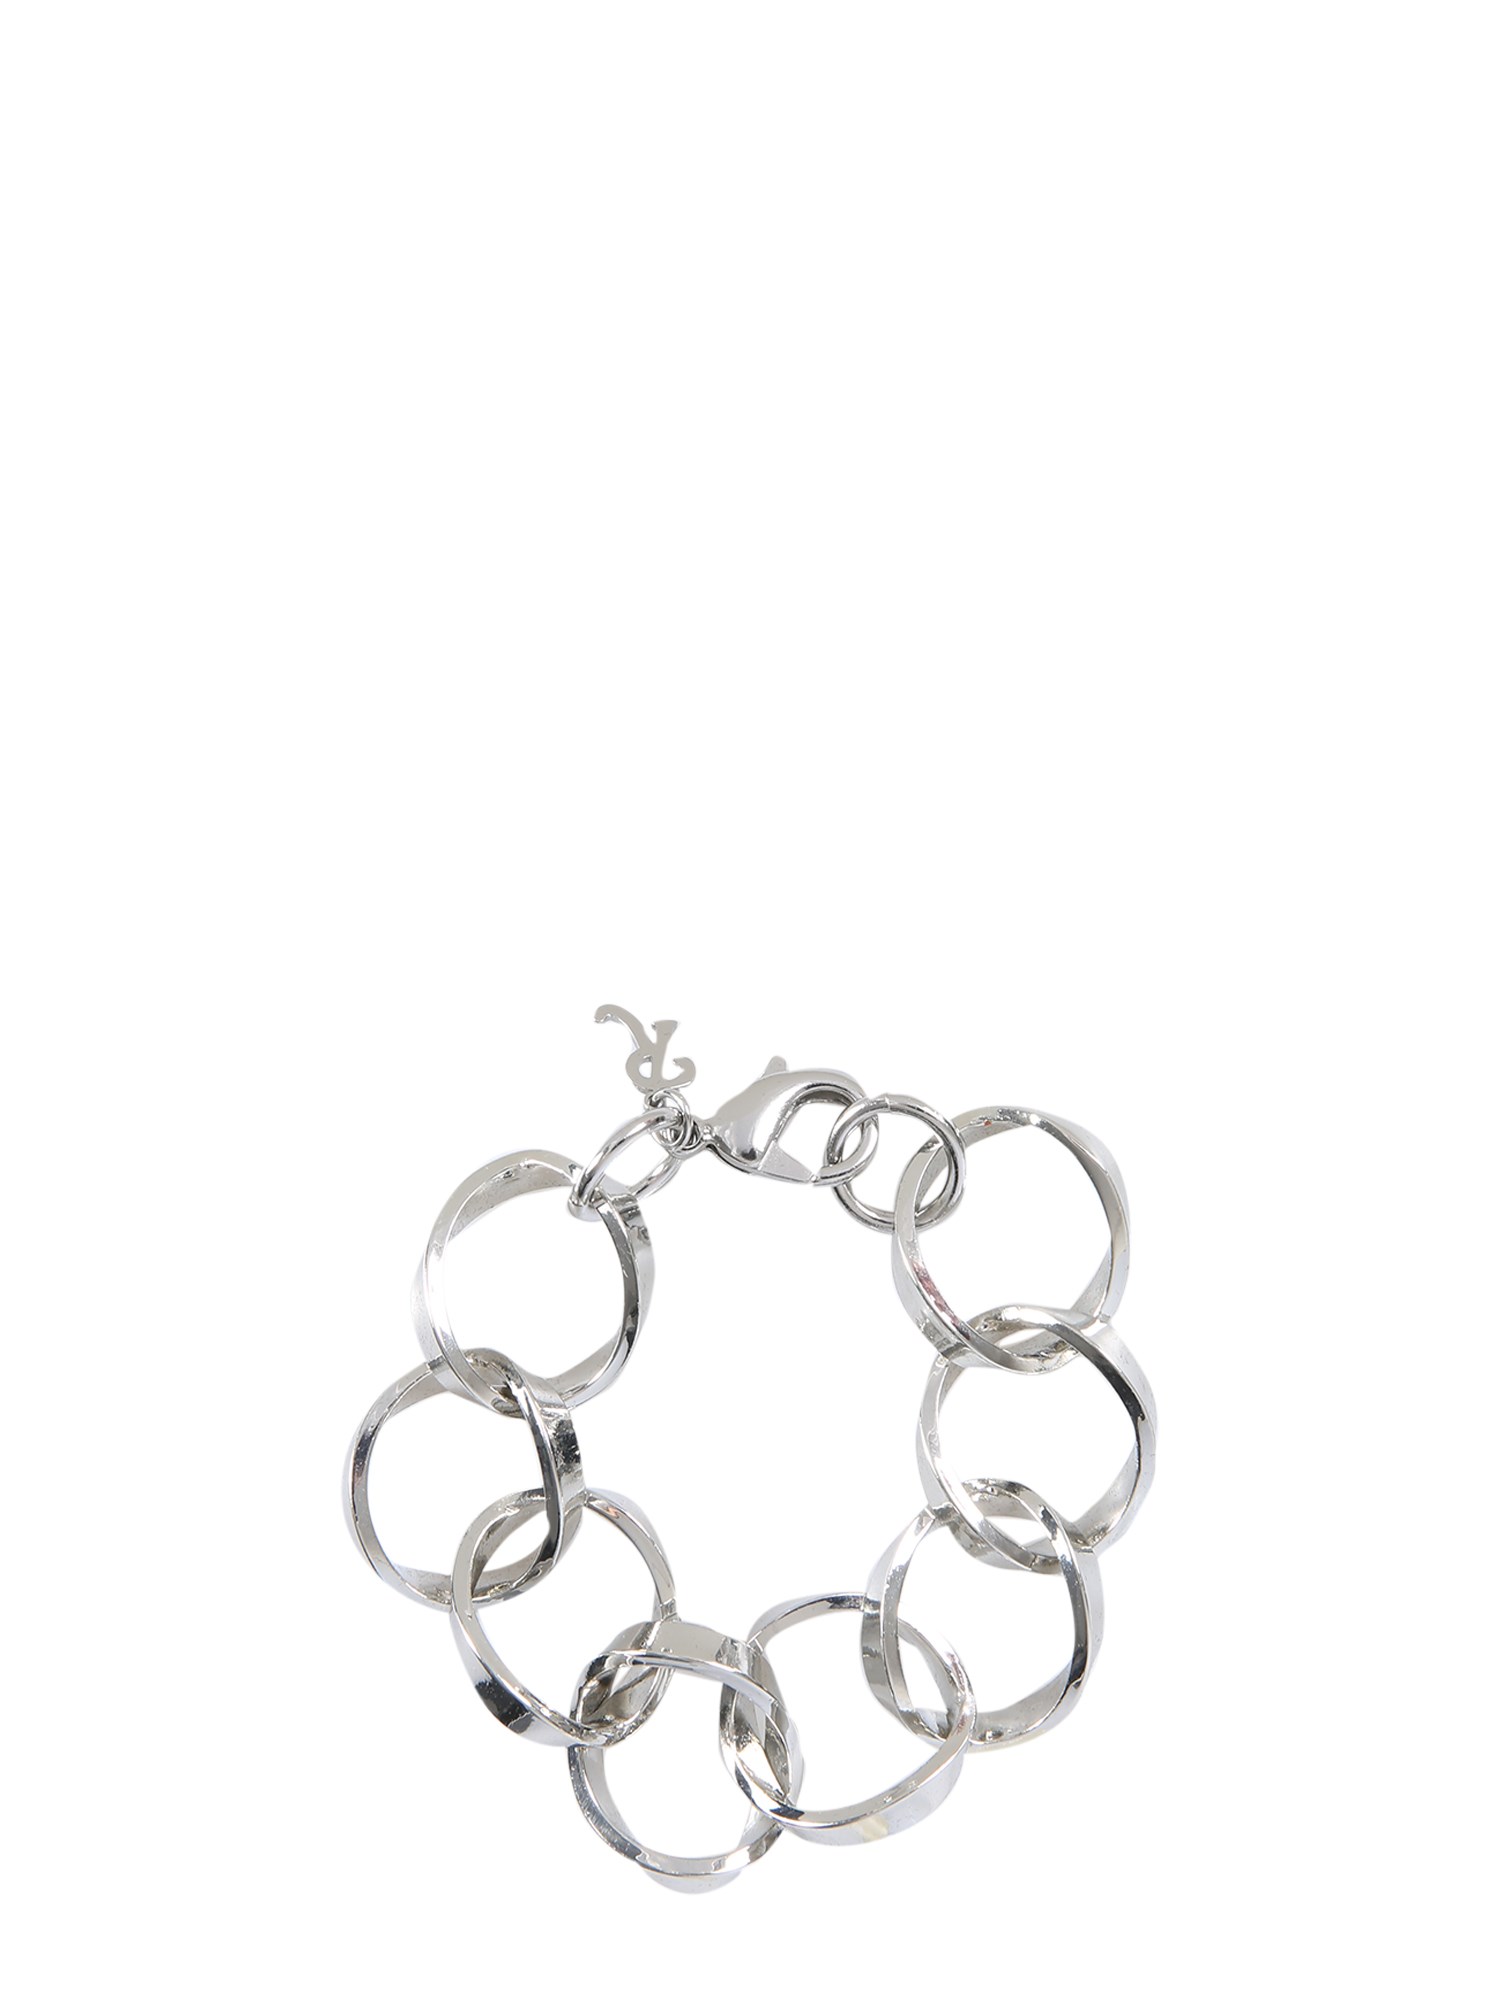 Raf Simons raf simons linked rings bracelet